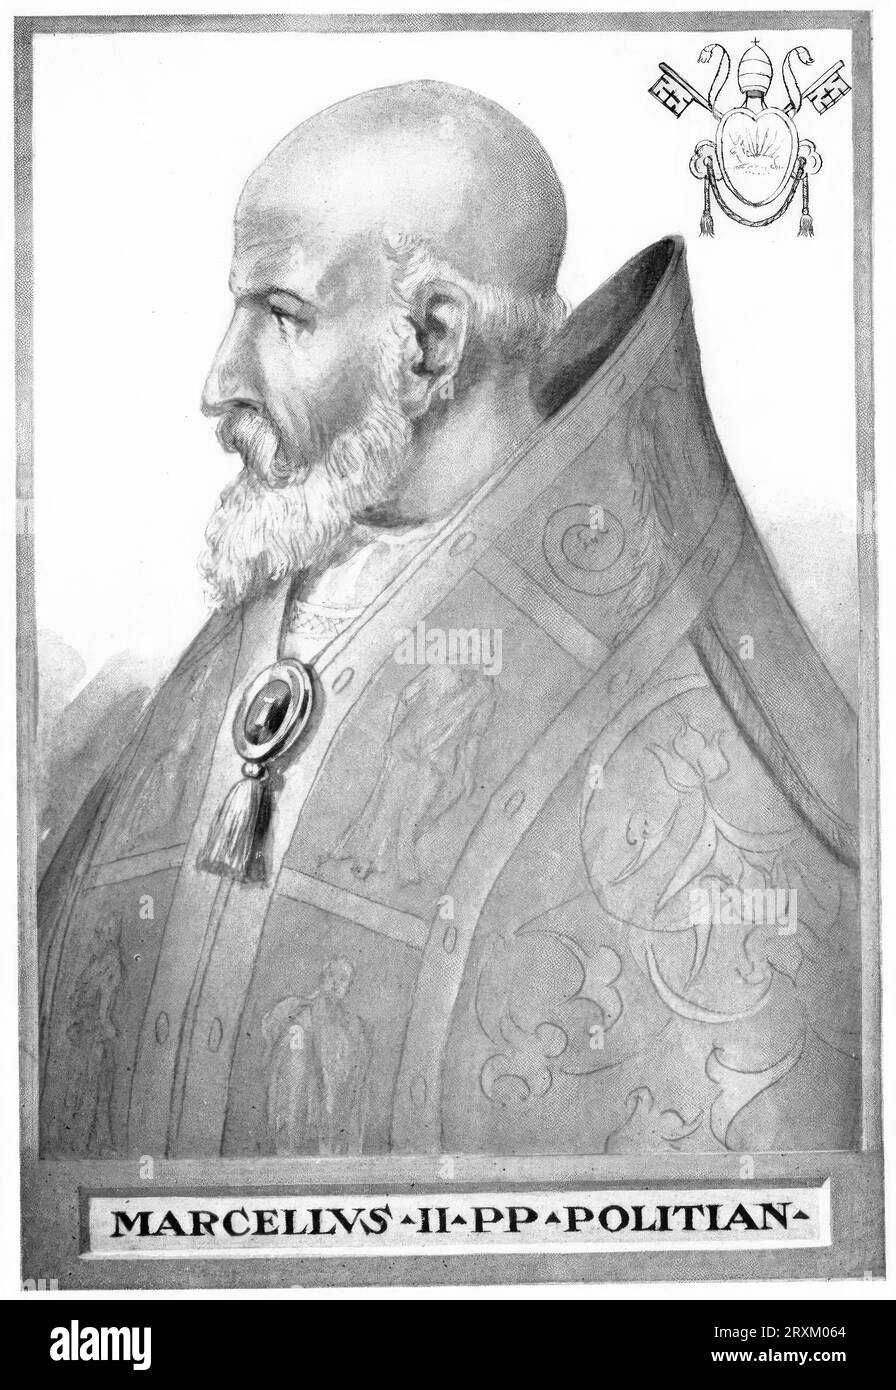 Marcellus II (Geb. 6. Mai 1501 in Montefano, verstorben 1. Mai 1555 in Rom), Geburtsname Marcello Cervini, war vom 9. April bis zum 1. Mai 1555 Papst der katholischen Kirche, Historisch, digital restaurierte Reproduktion von einer Vorlage aus dem 19. Jahrhundert/Marcellus II. (* 6. Mai 1501 in Montefano, gestorben 1. Mai 1555 in Rom), Geburtsname Marcello Cervini, war vom 9. April bis 1. Mai 1555 Papst der katholischen Kirche, historische, digital restaurierte Reproduktion eines Originals aus dem 19. Jahrhundert Stockfoto